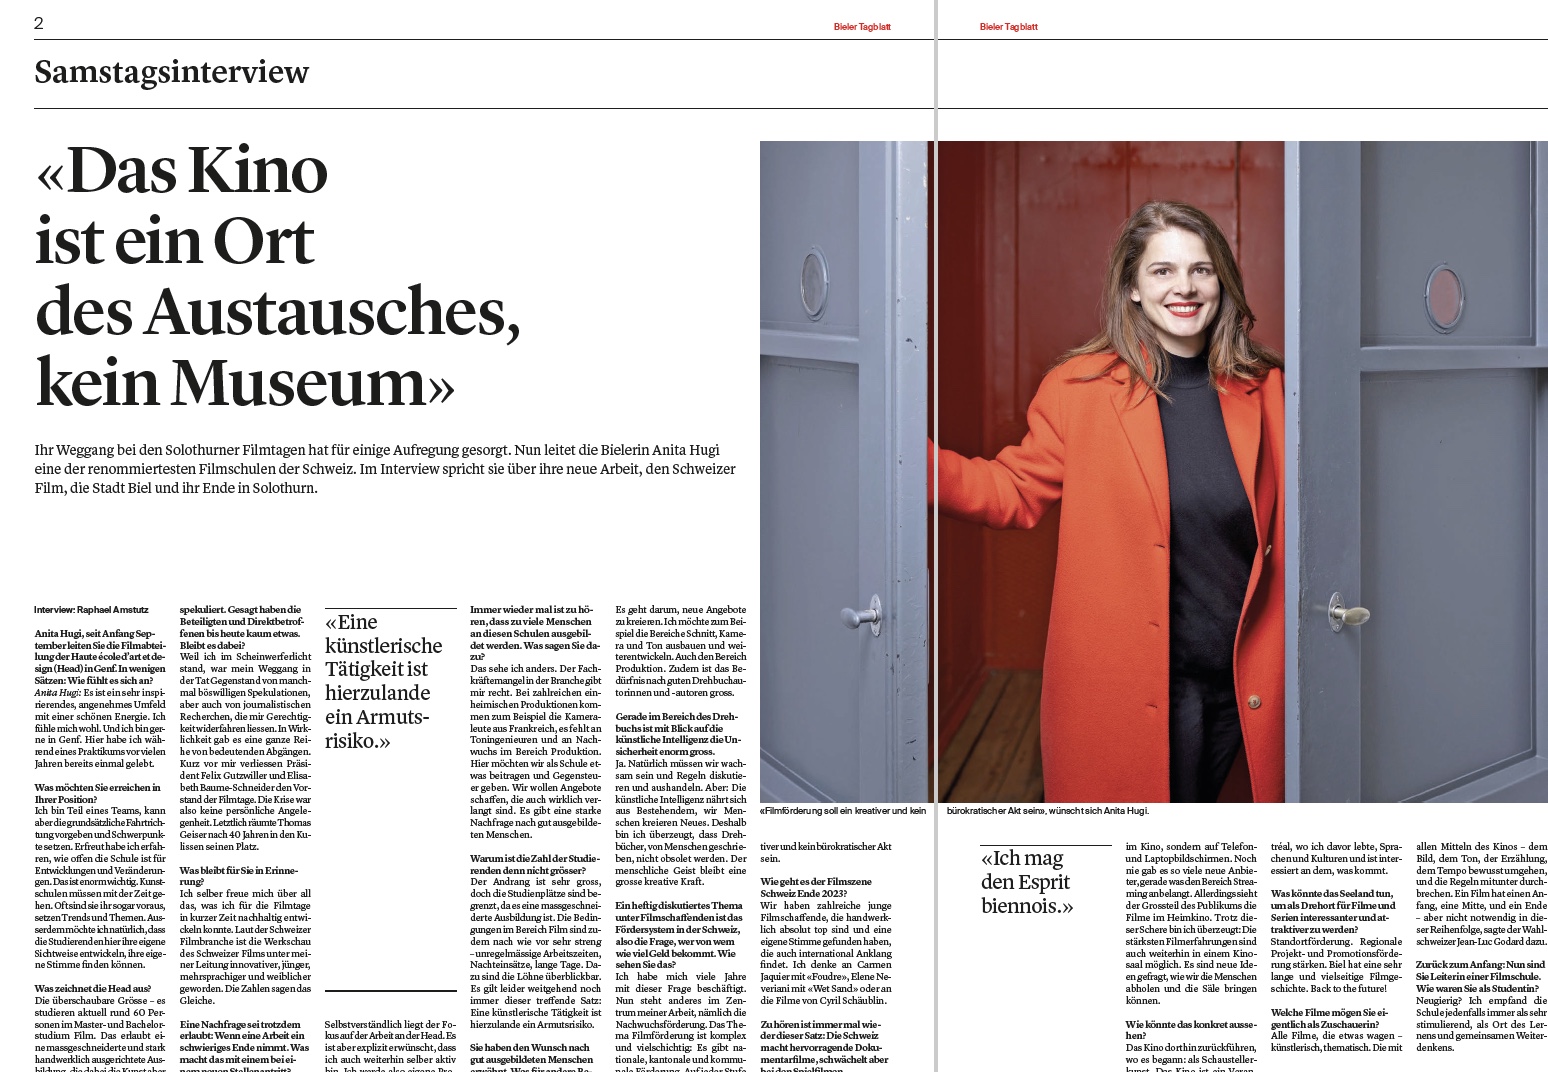 «Le cinéma est un lieu de rencontre, pas un musée.» - Interview aujourd'hui dans le Le Journal du Jura.